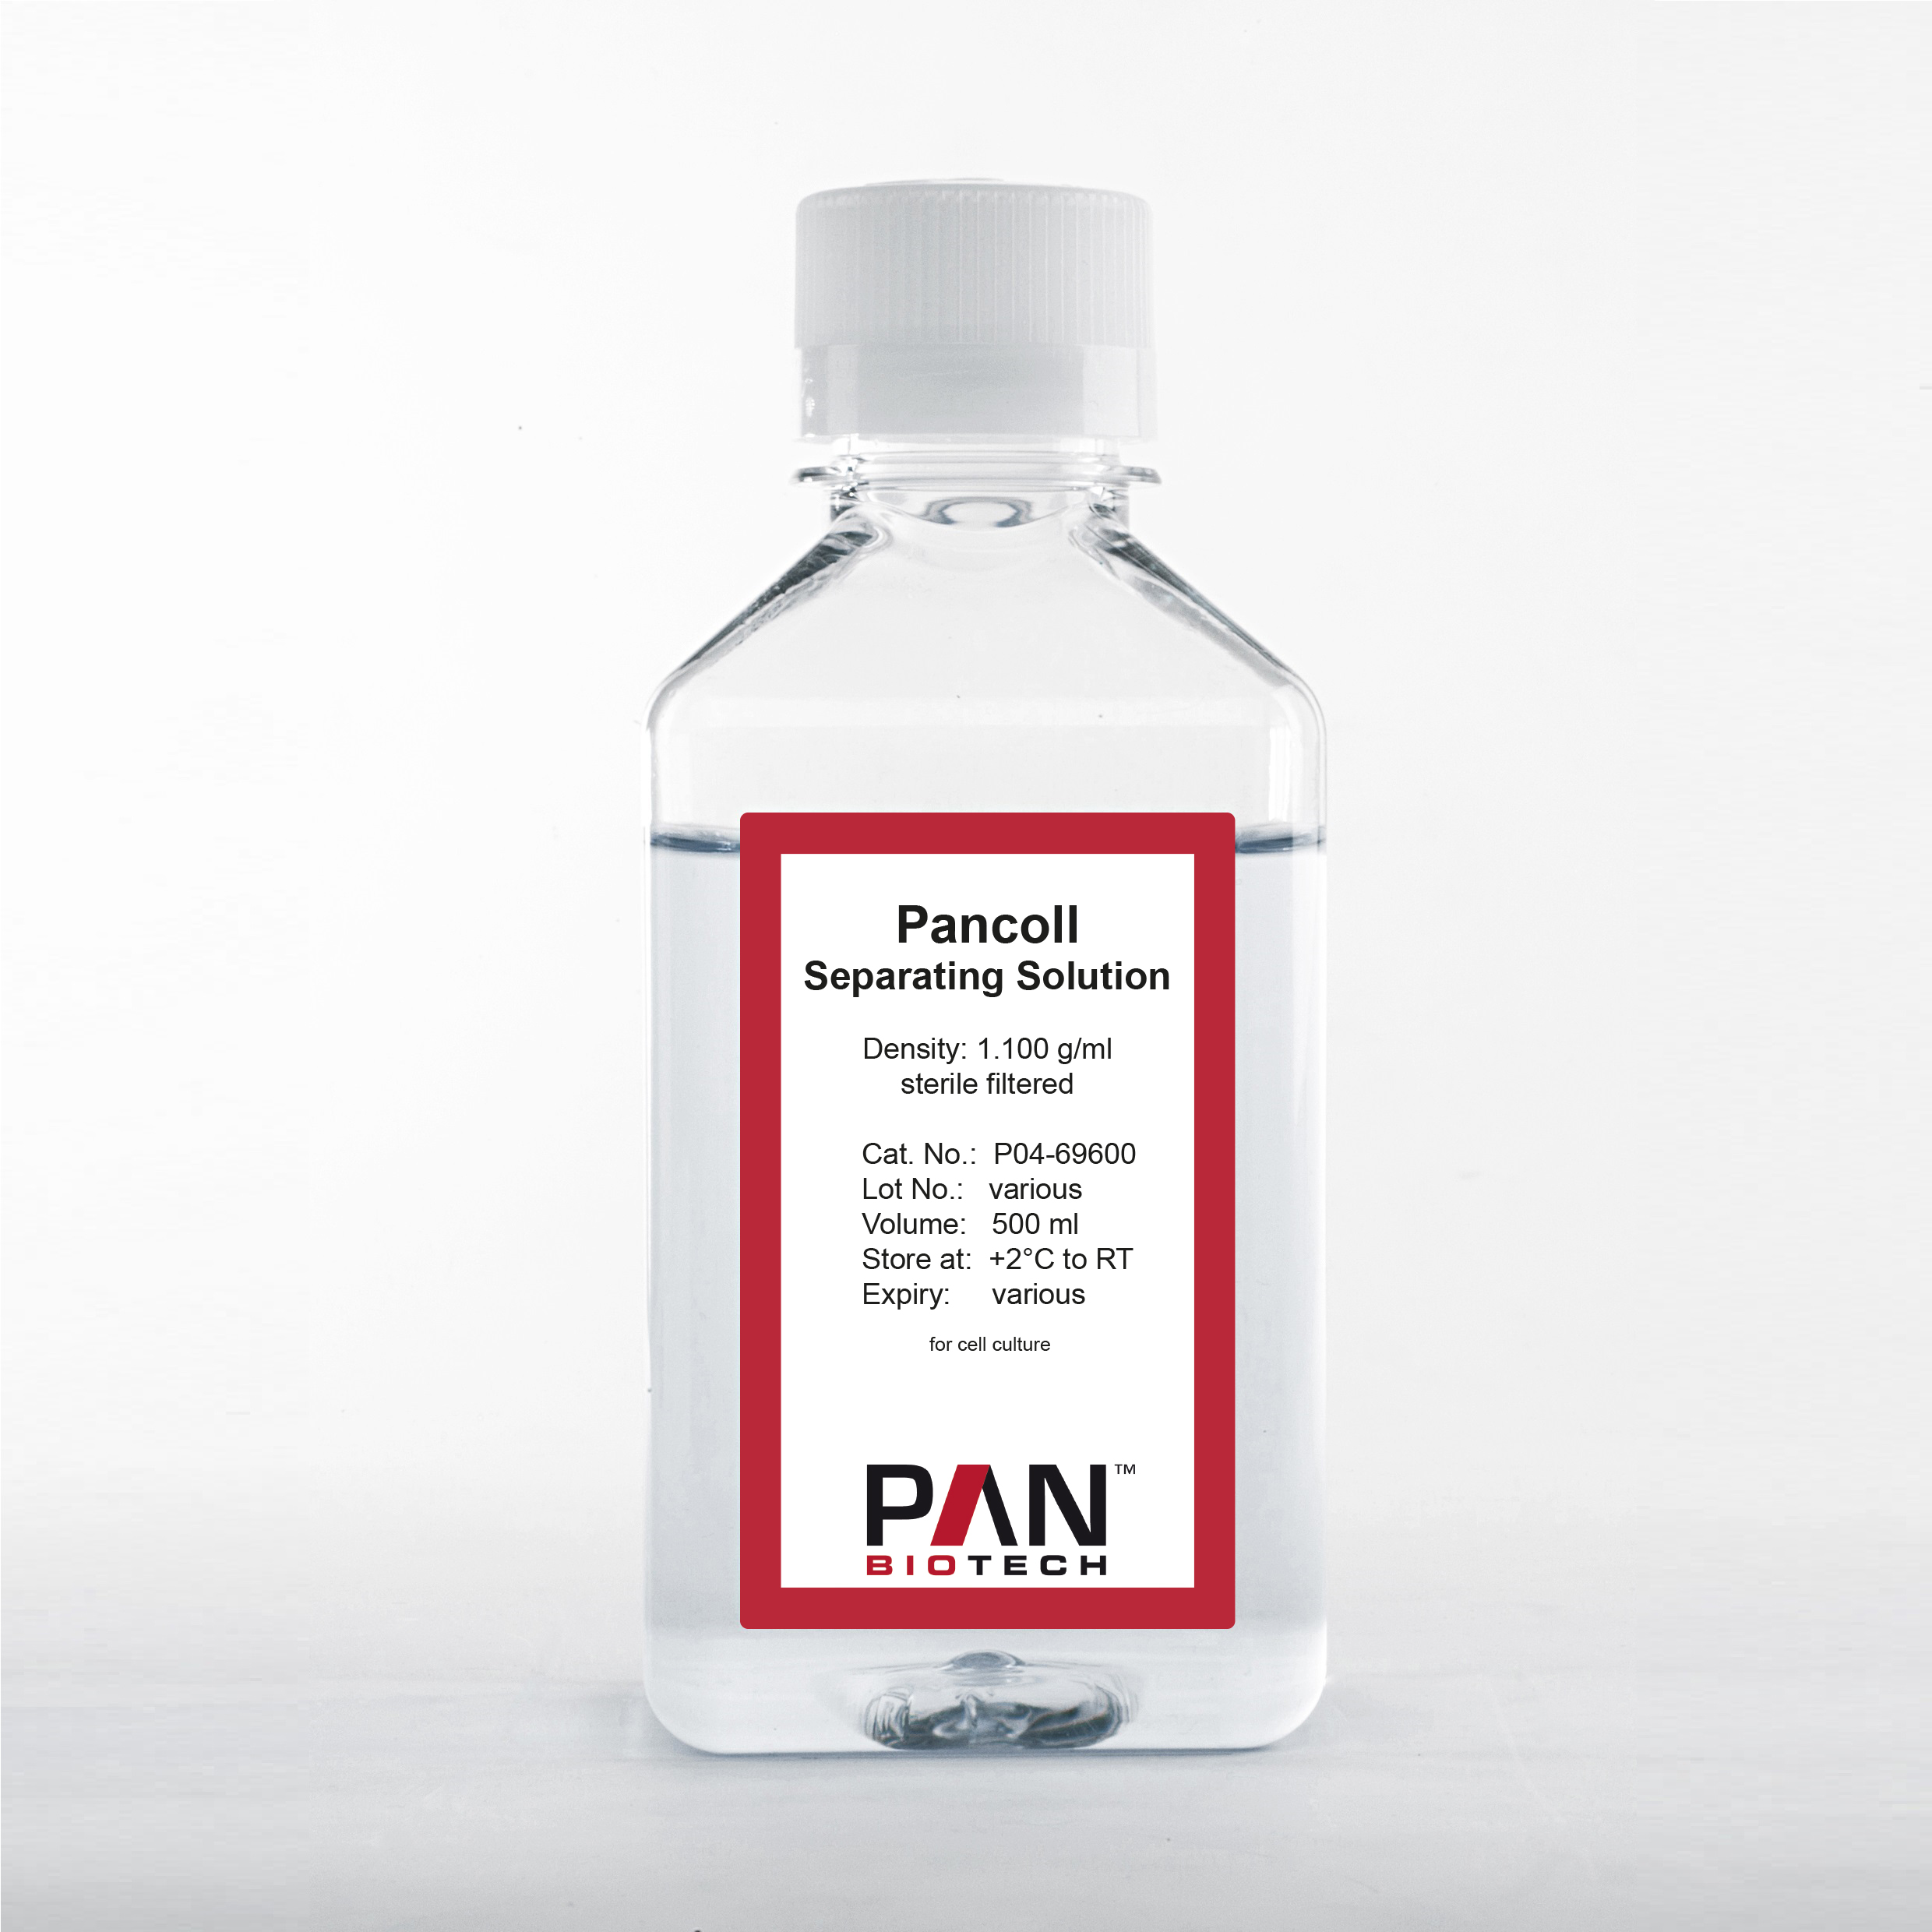 Pancoll human, Separating Solution, Density: 1.100 g/ml